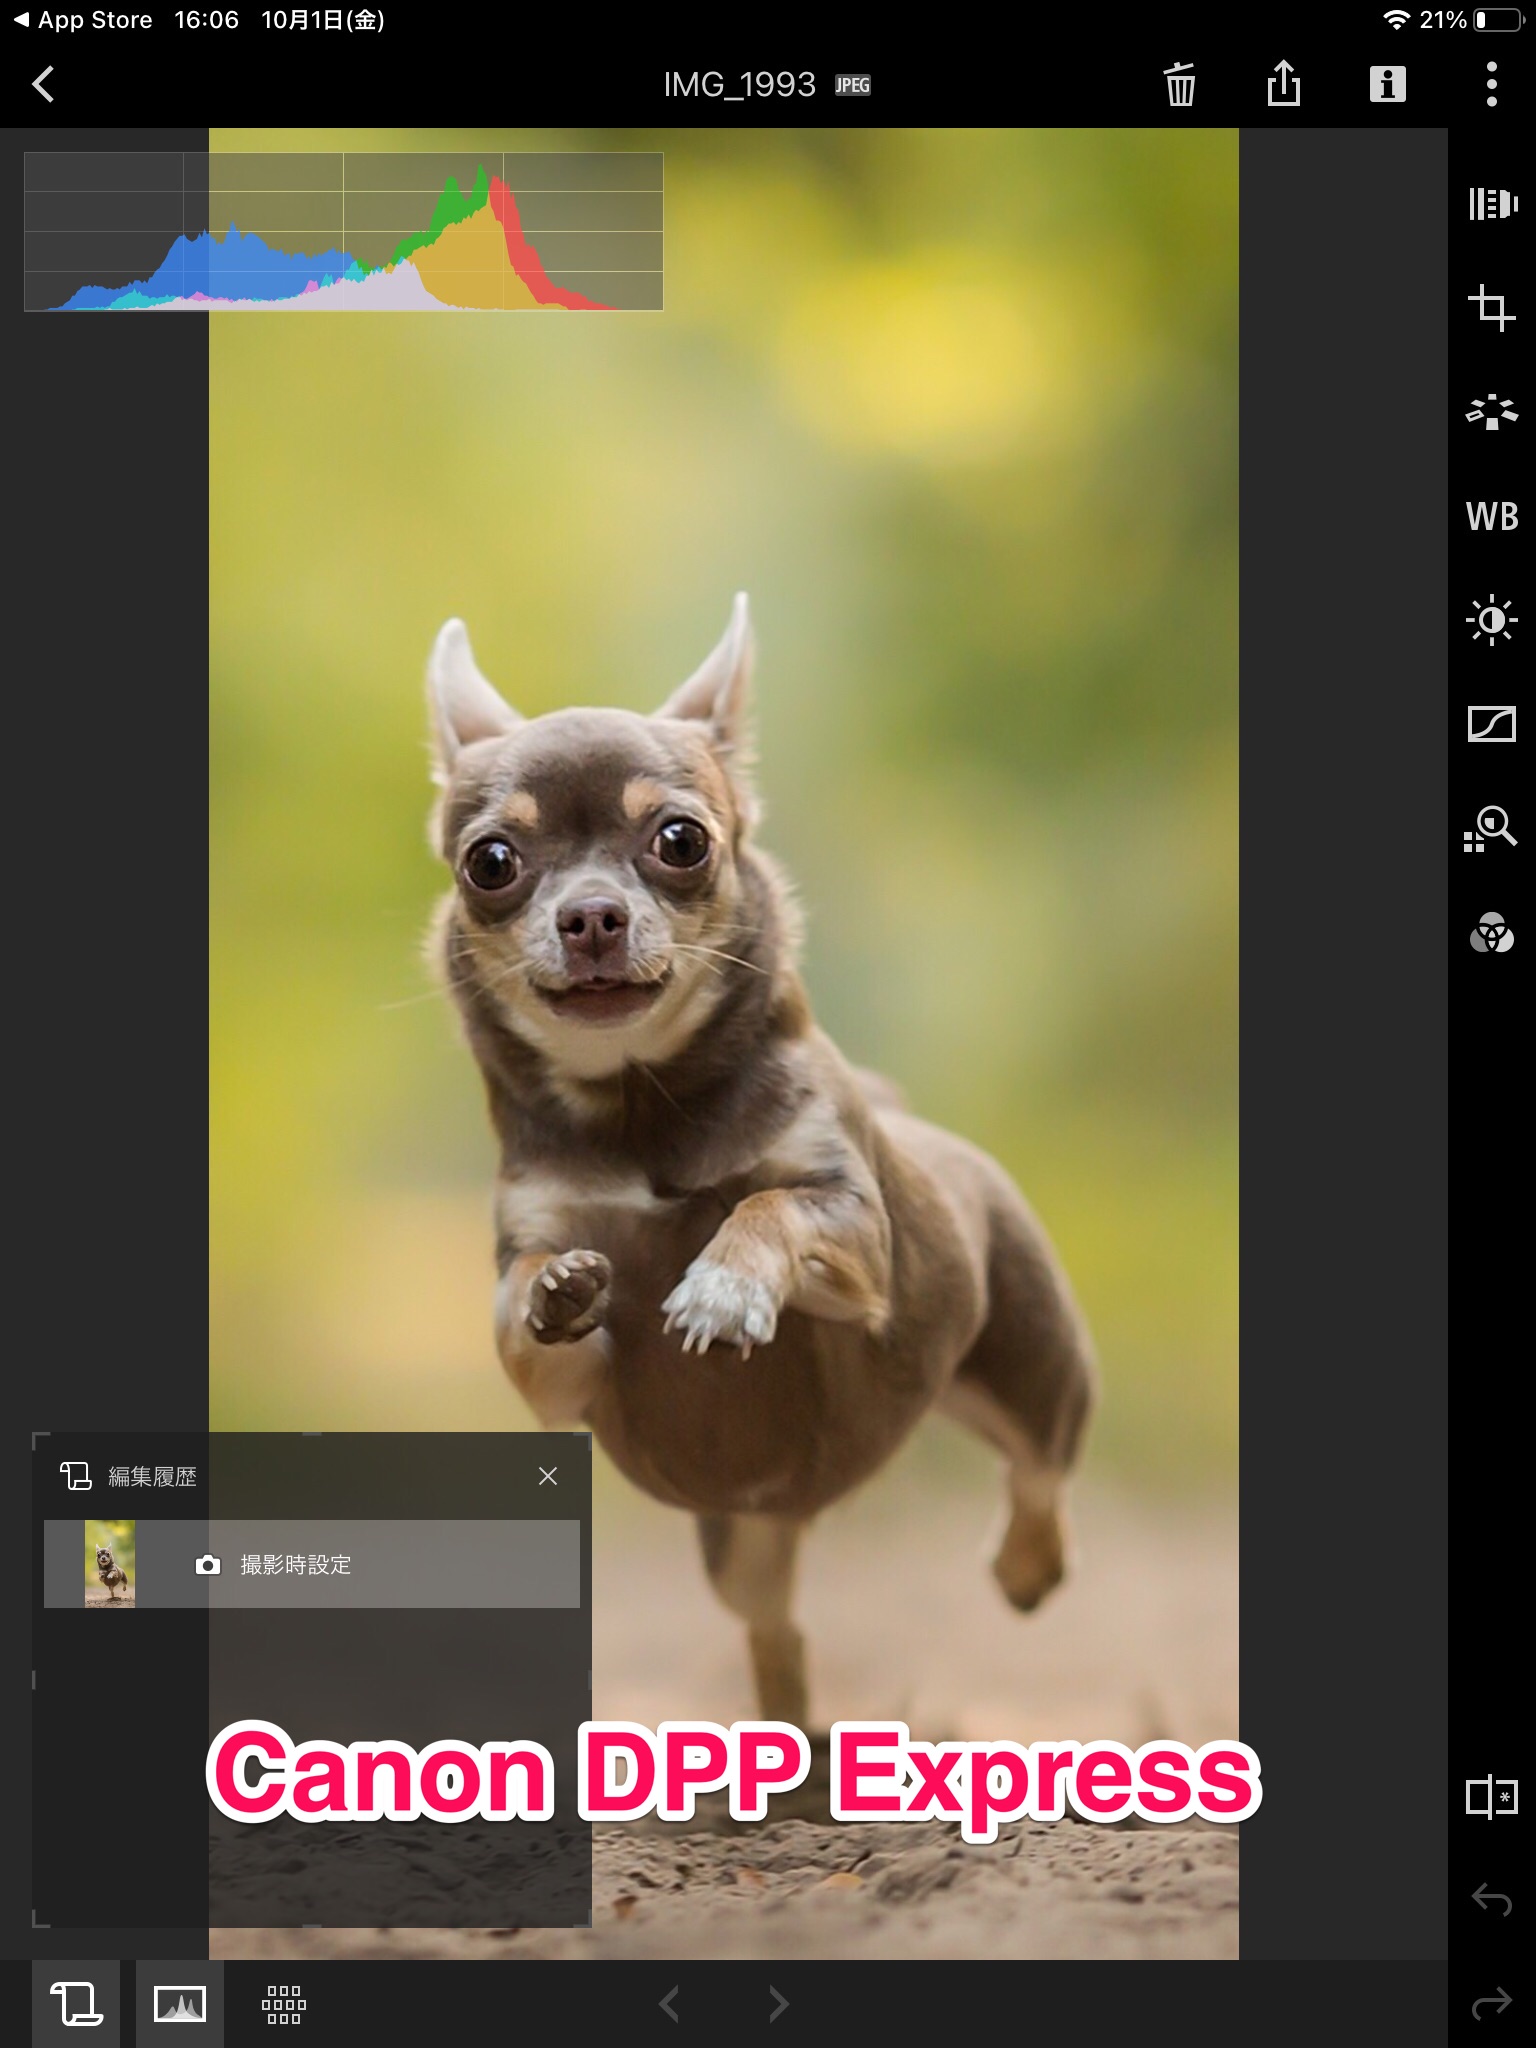 Canon DPP Express